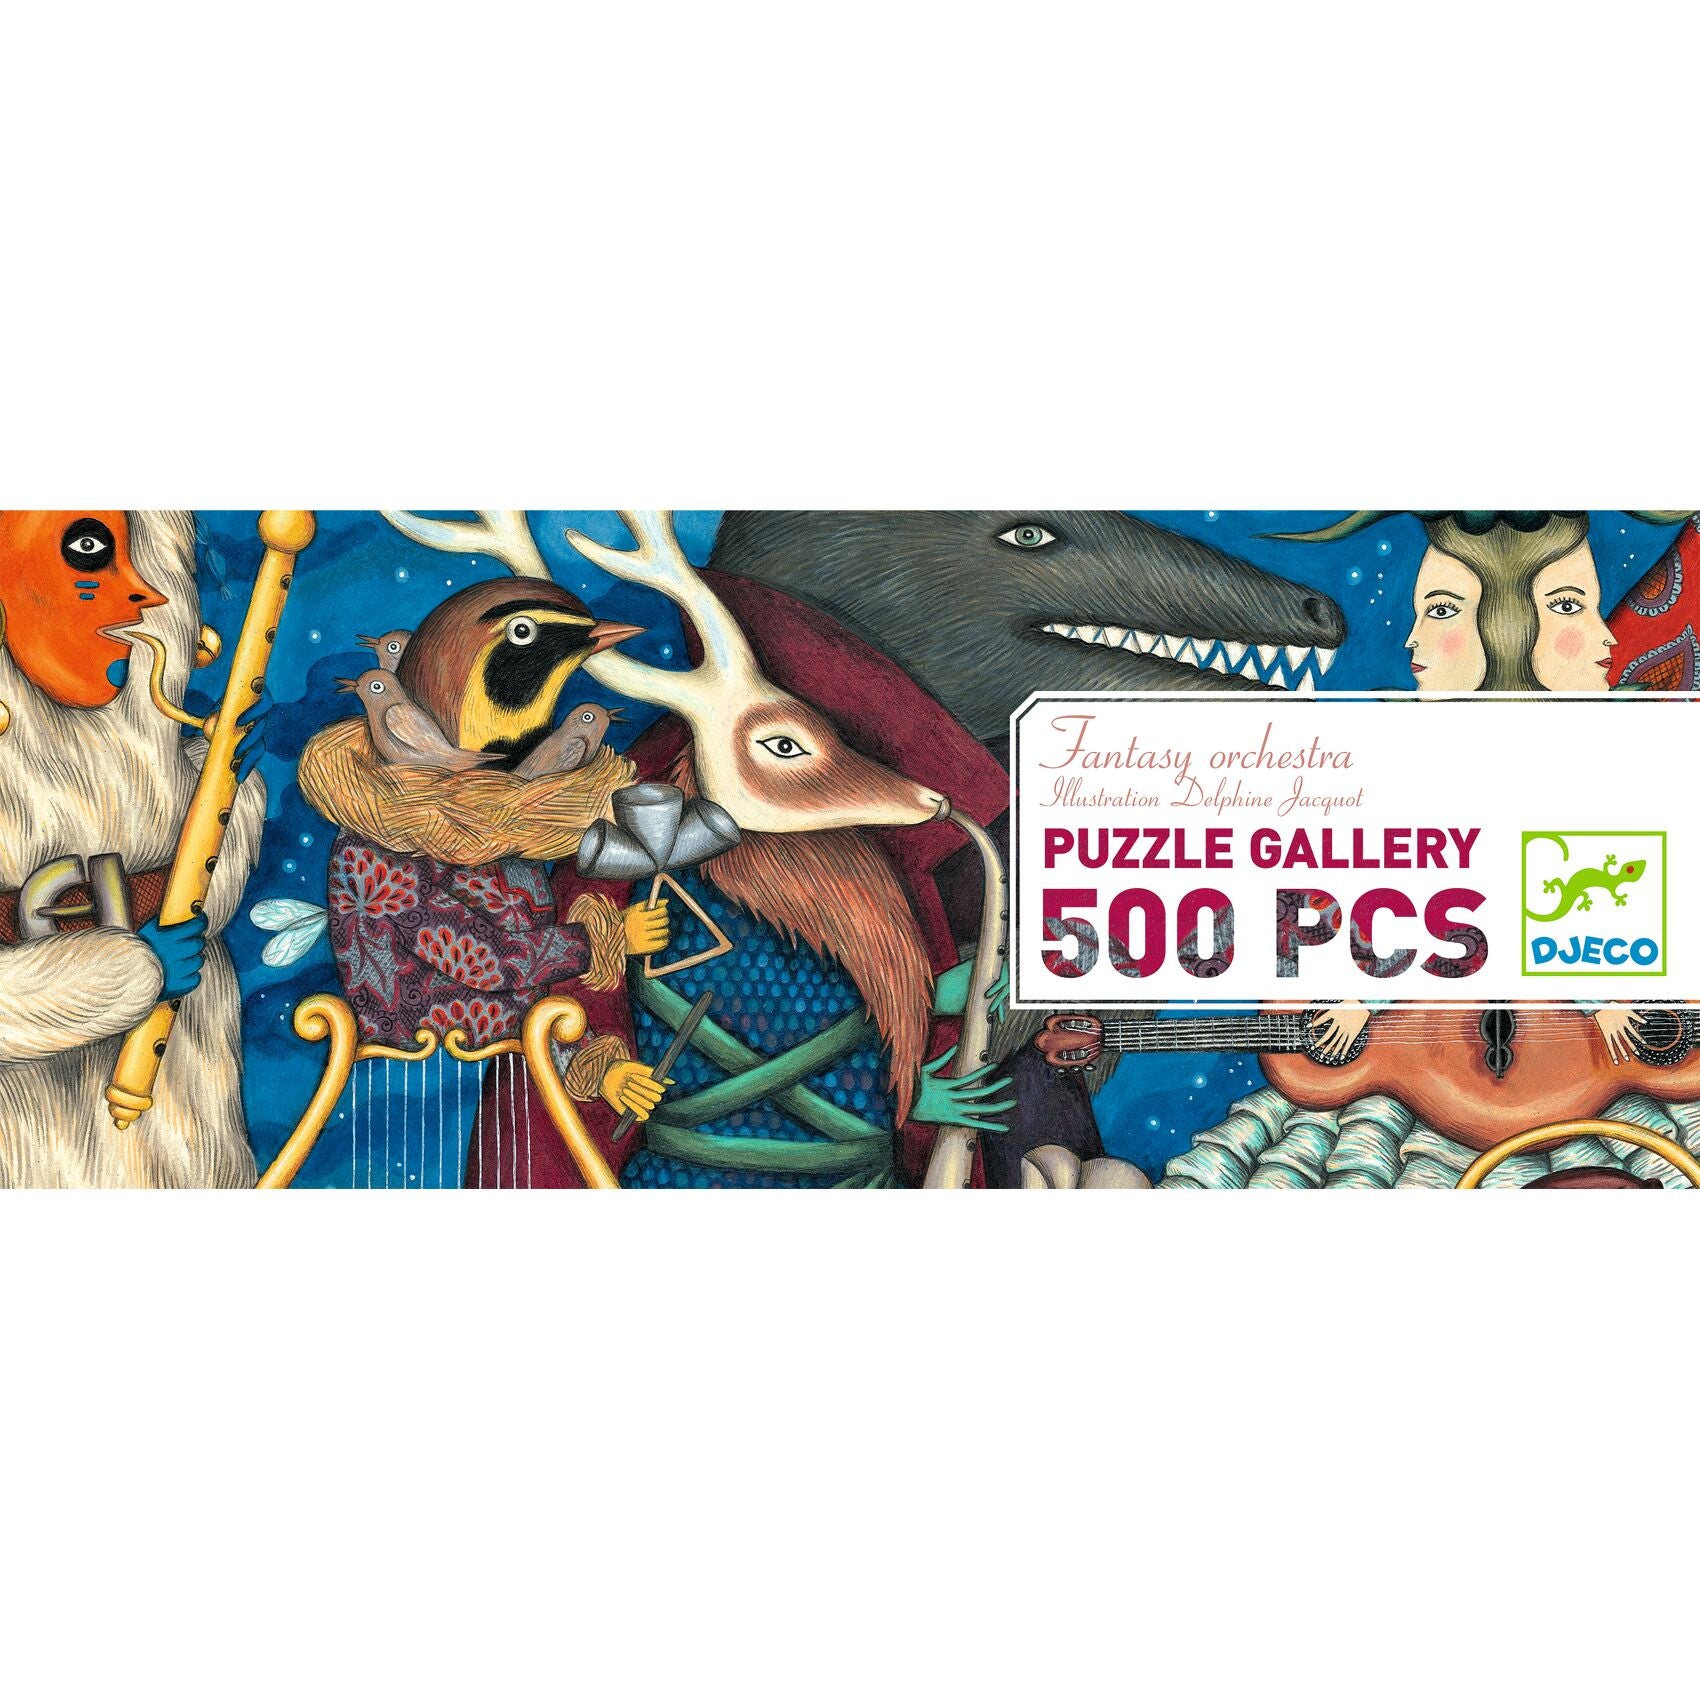 500pcsパズル ファンタジーオーケストラ|フランス玩具ジェコ8歳からの500pcsパズル ファンタジーオーケストラ。イラストレーターの自由な絵がそのままパズルに。フランス老舗玩具ブランドDJECOジェコのギャラリーパズル